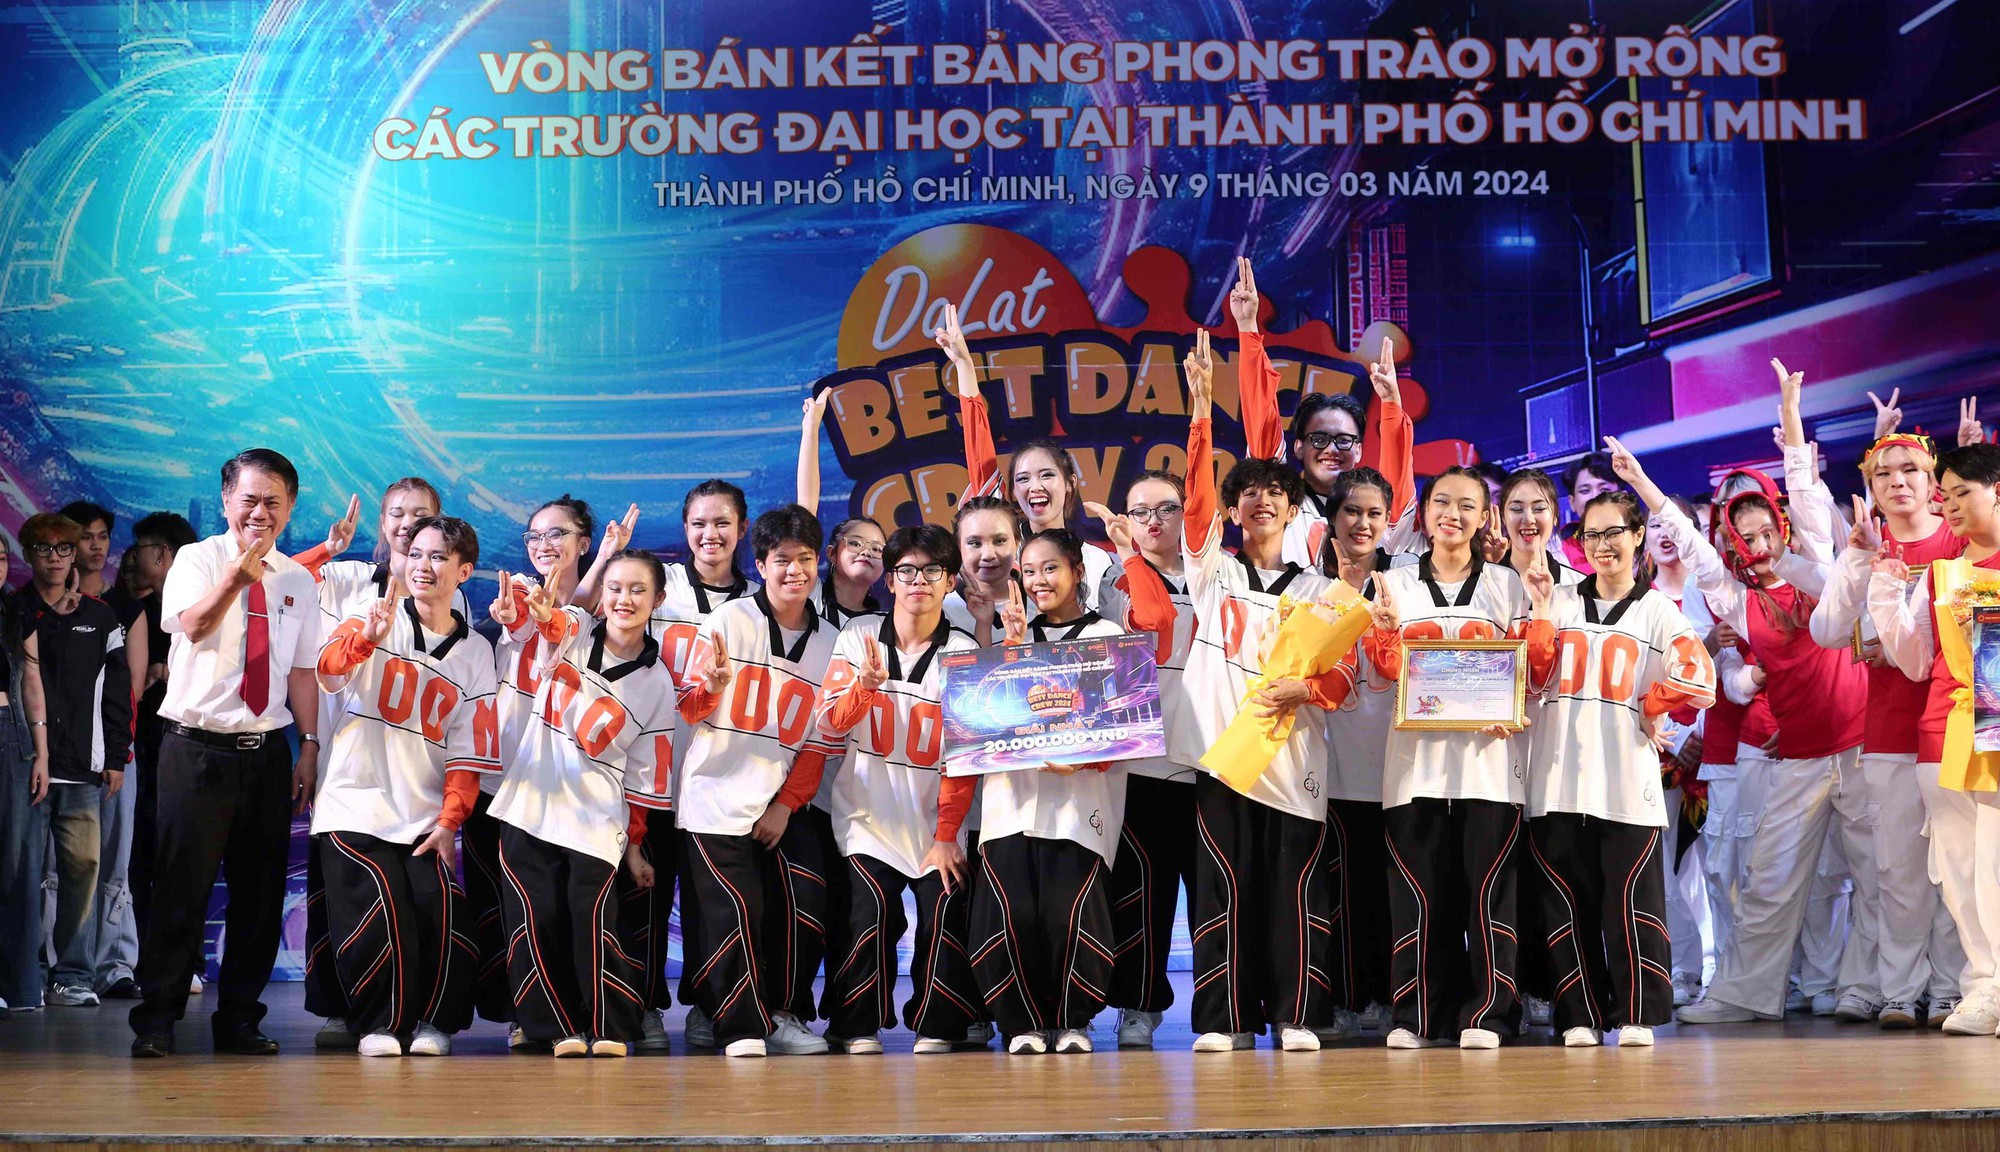 Biên đạo Huỳnh Mến “tiếp lửa” cho các nhóm nhảy sinh viên tại Dalat Best Dance Crew 2024 - Ảnh 2.